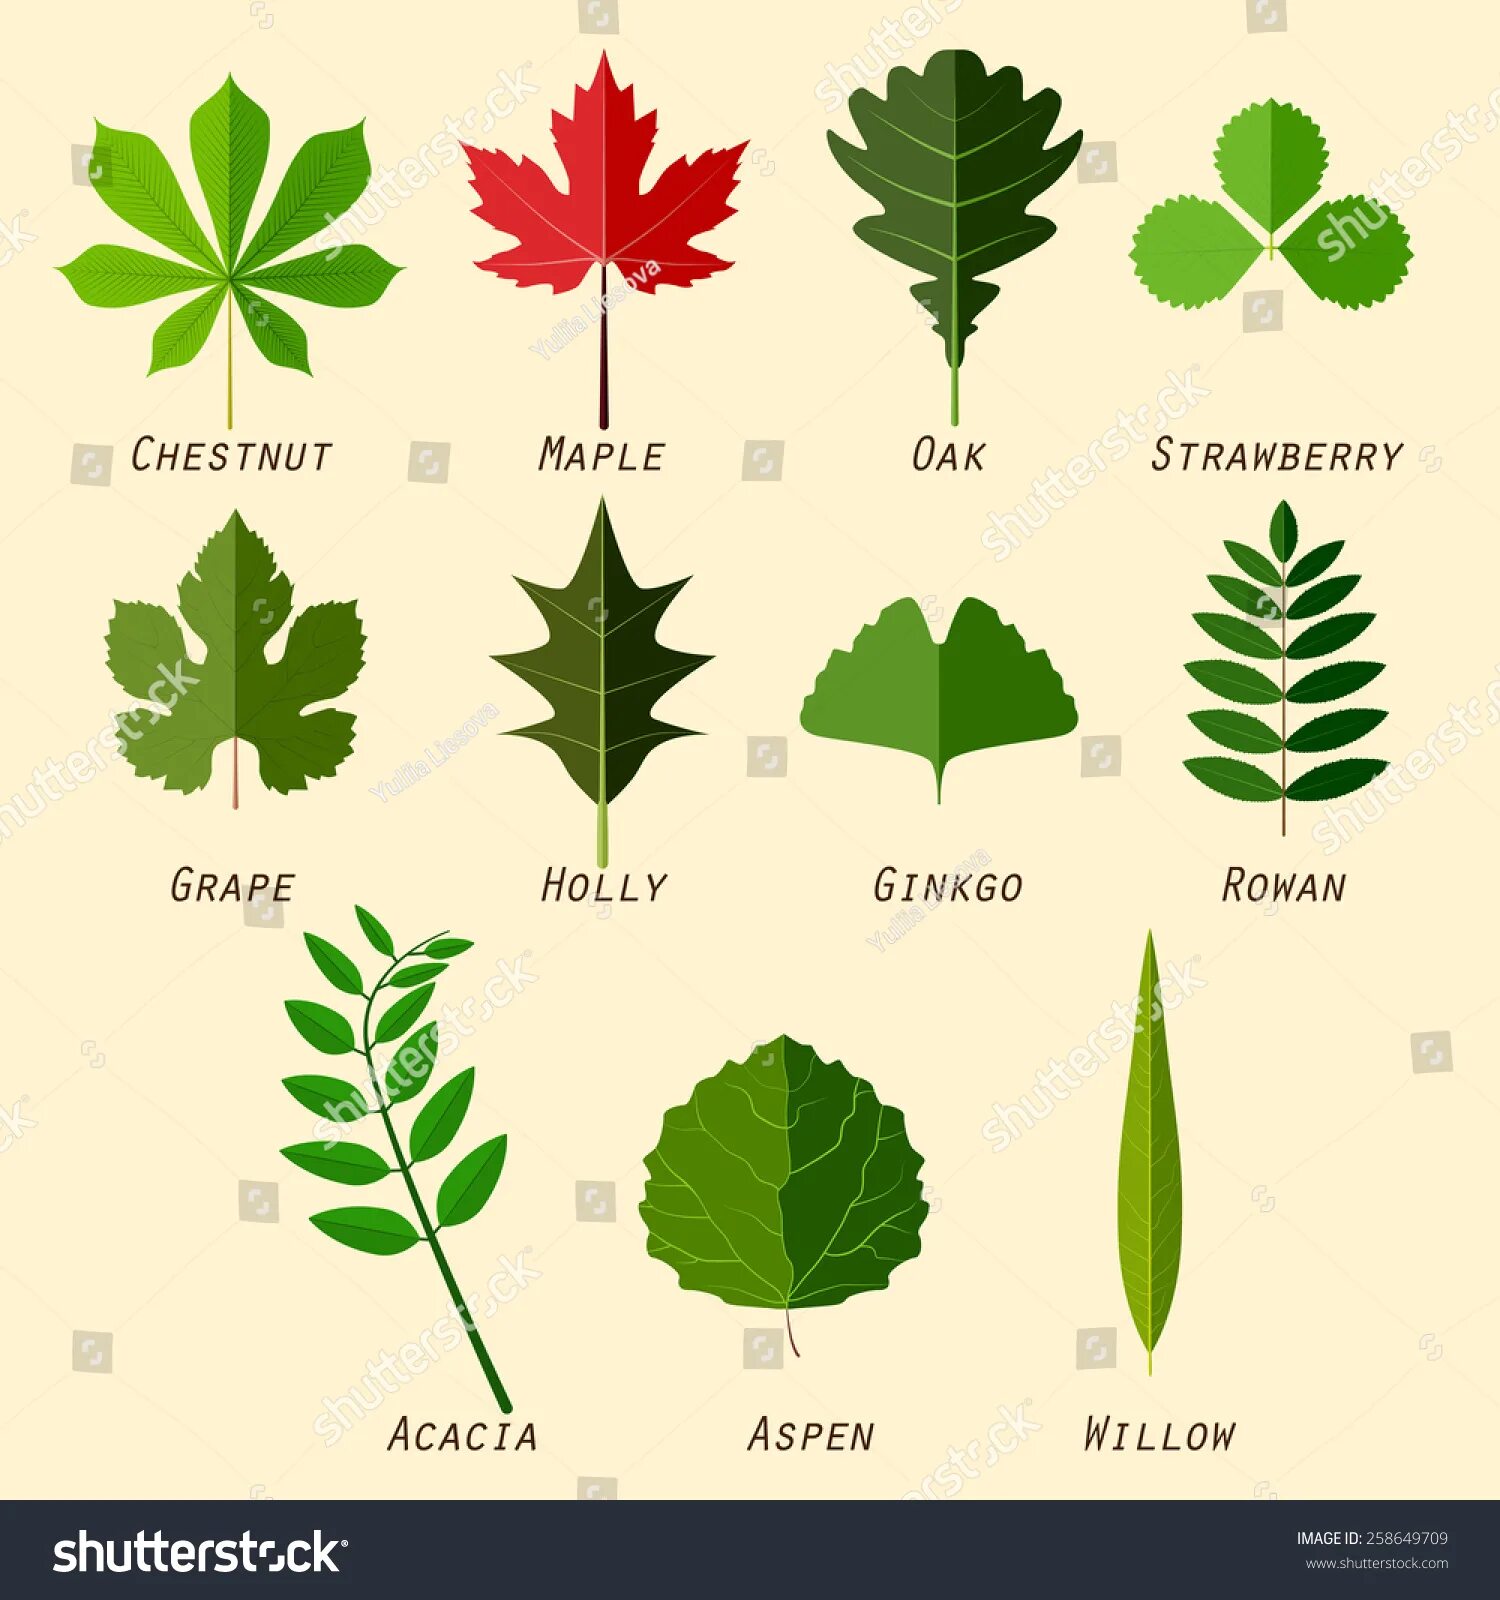 Определить название листьев деревьев. Листья деревьев и кустарников. Листы деревьев и их названия. Название листьев. Название деревьев по листьям.